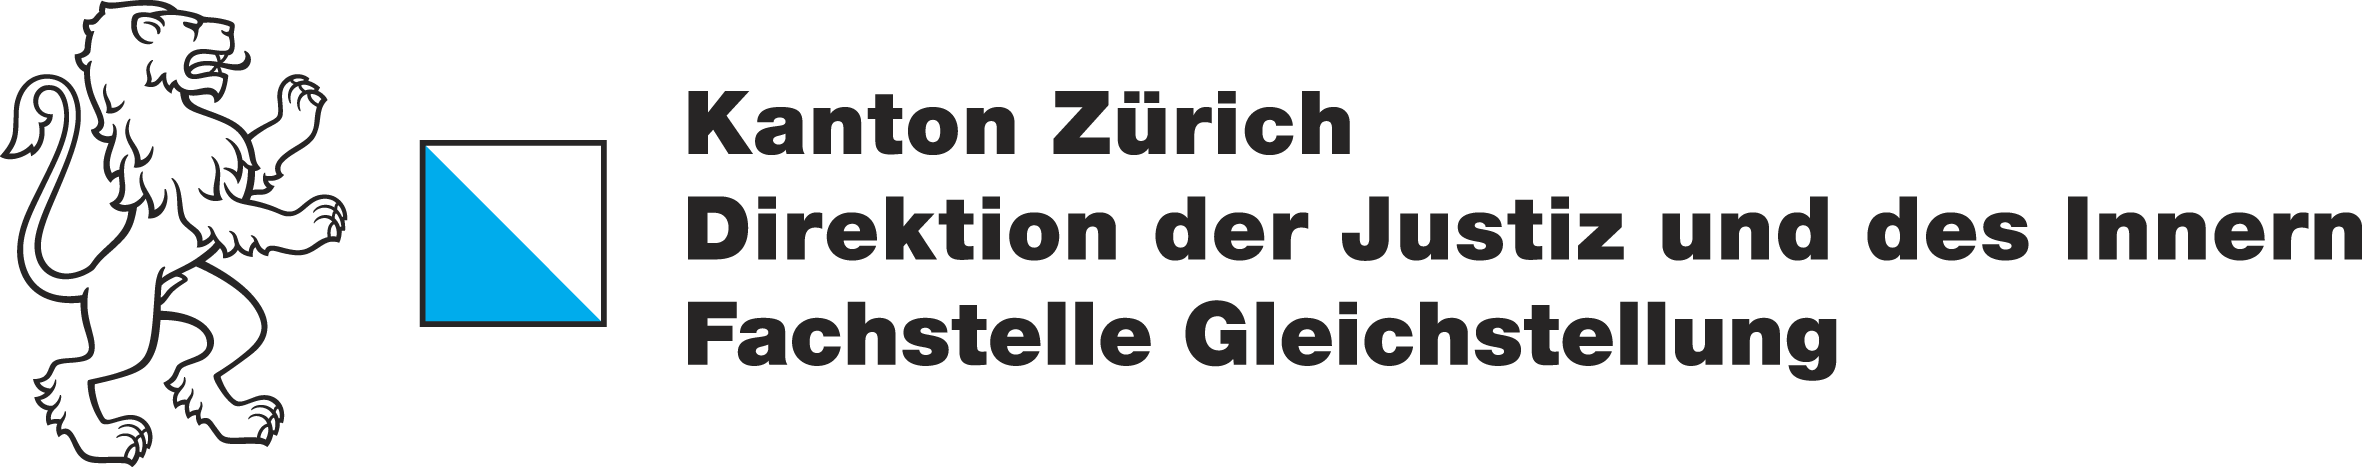 Fachstelle Gleichstellung Kanton Zürich